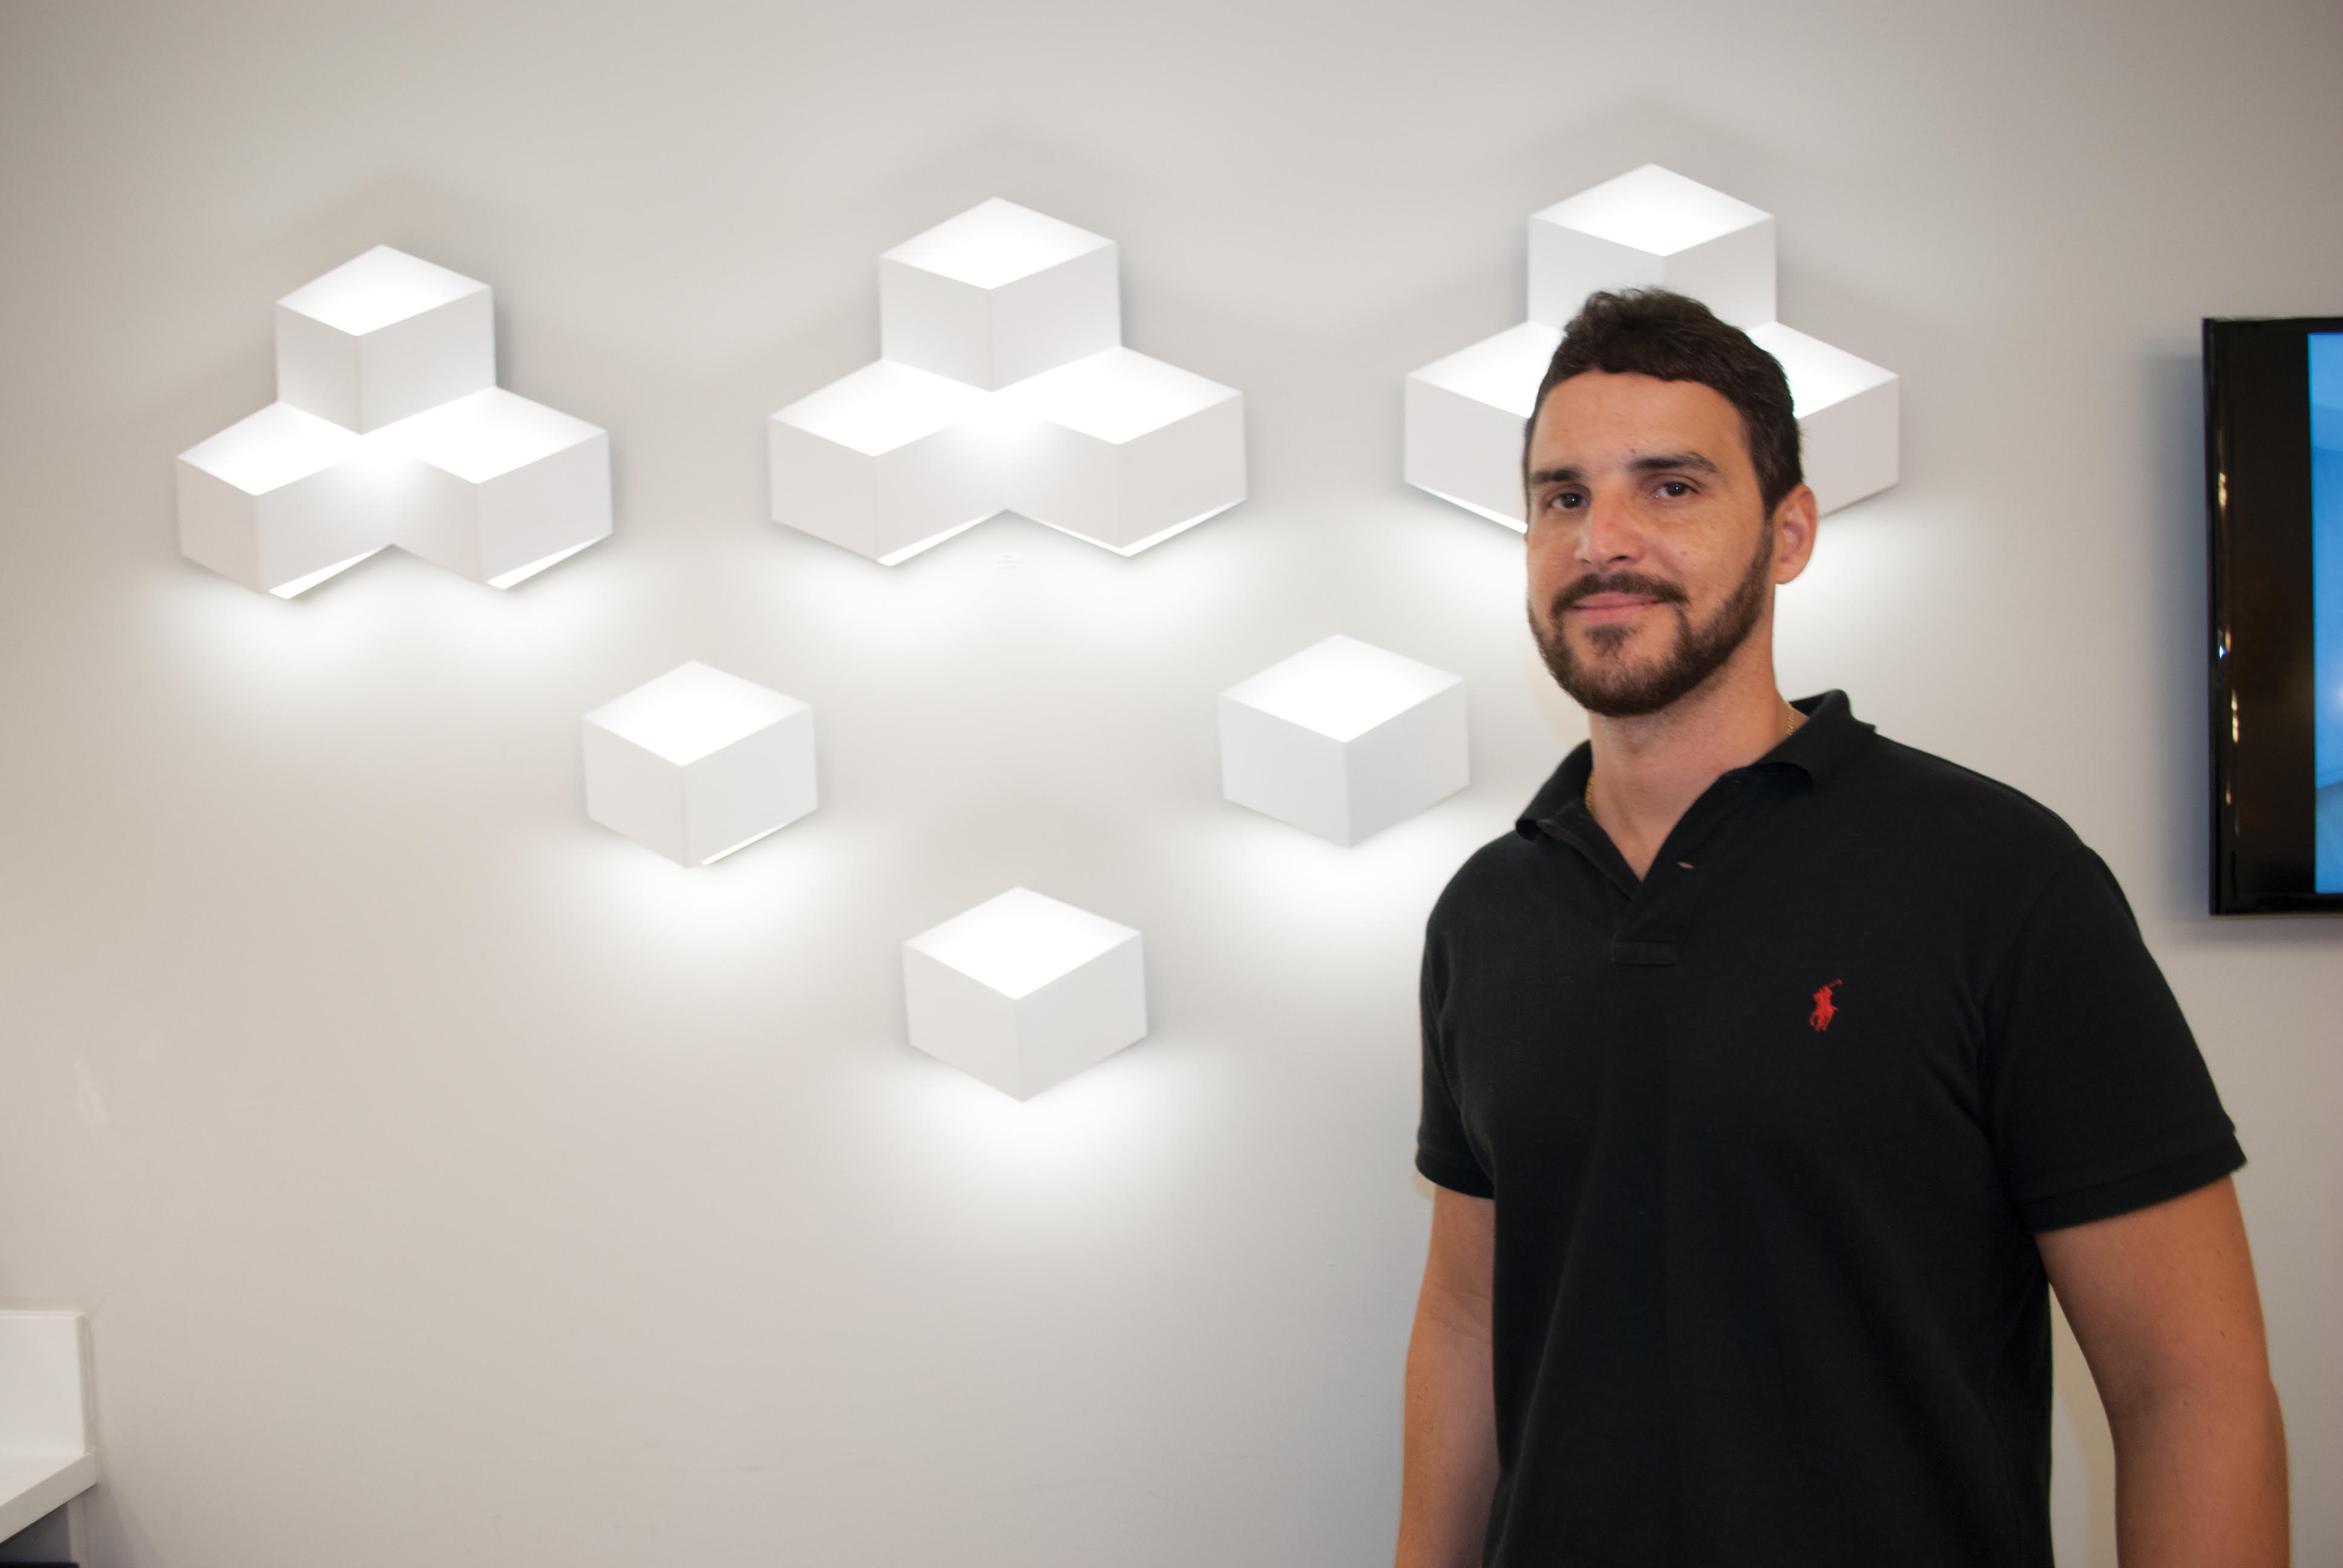 Palestra "LED: Novas aplicações" vai acontecer na Desigual Luz e Design